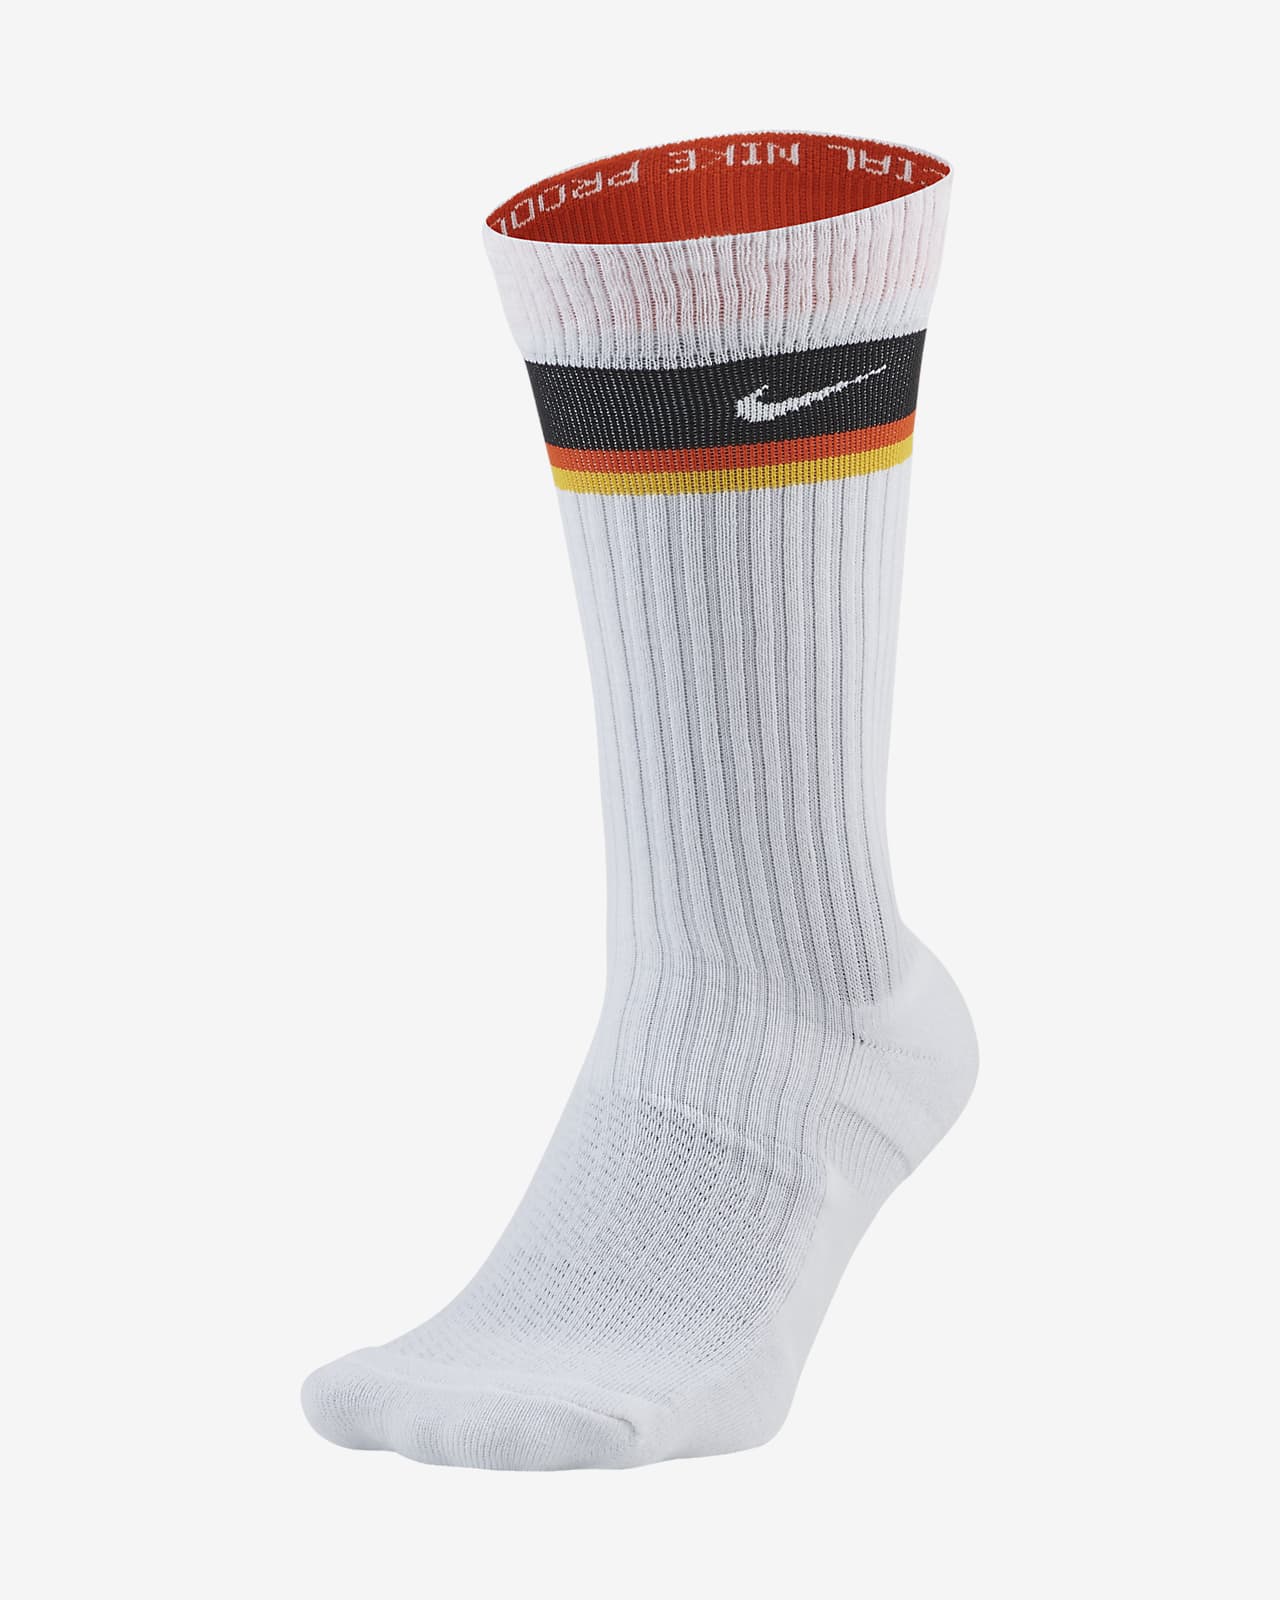 Nike公式 ナイキ Snkr ソックス レイガンズ バスケットボール クルー ソックス オンラインストア 通販サイト